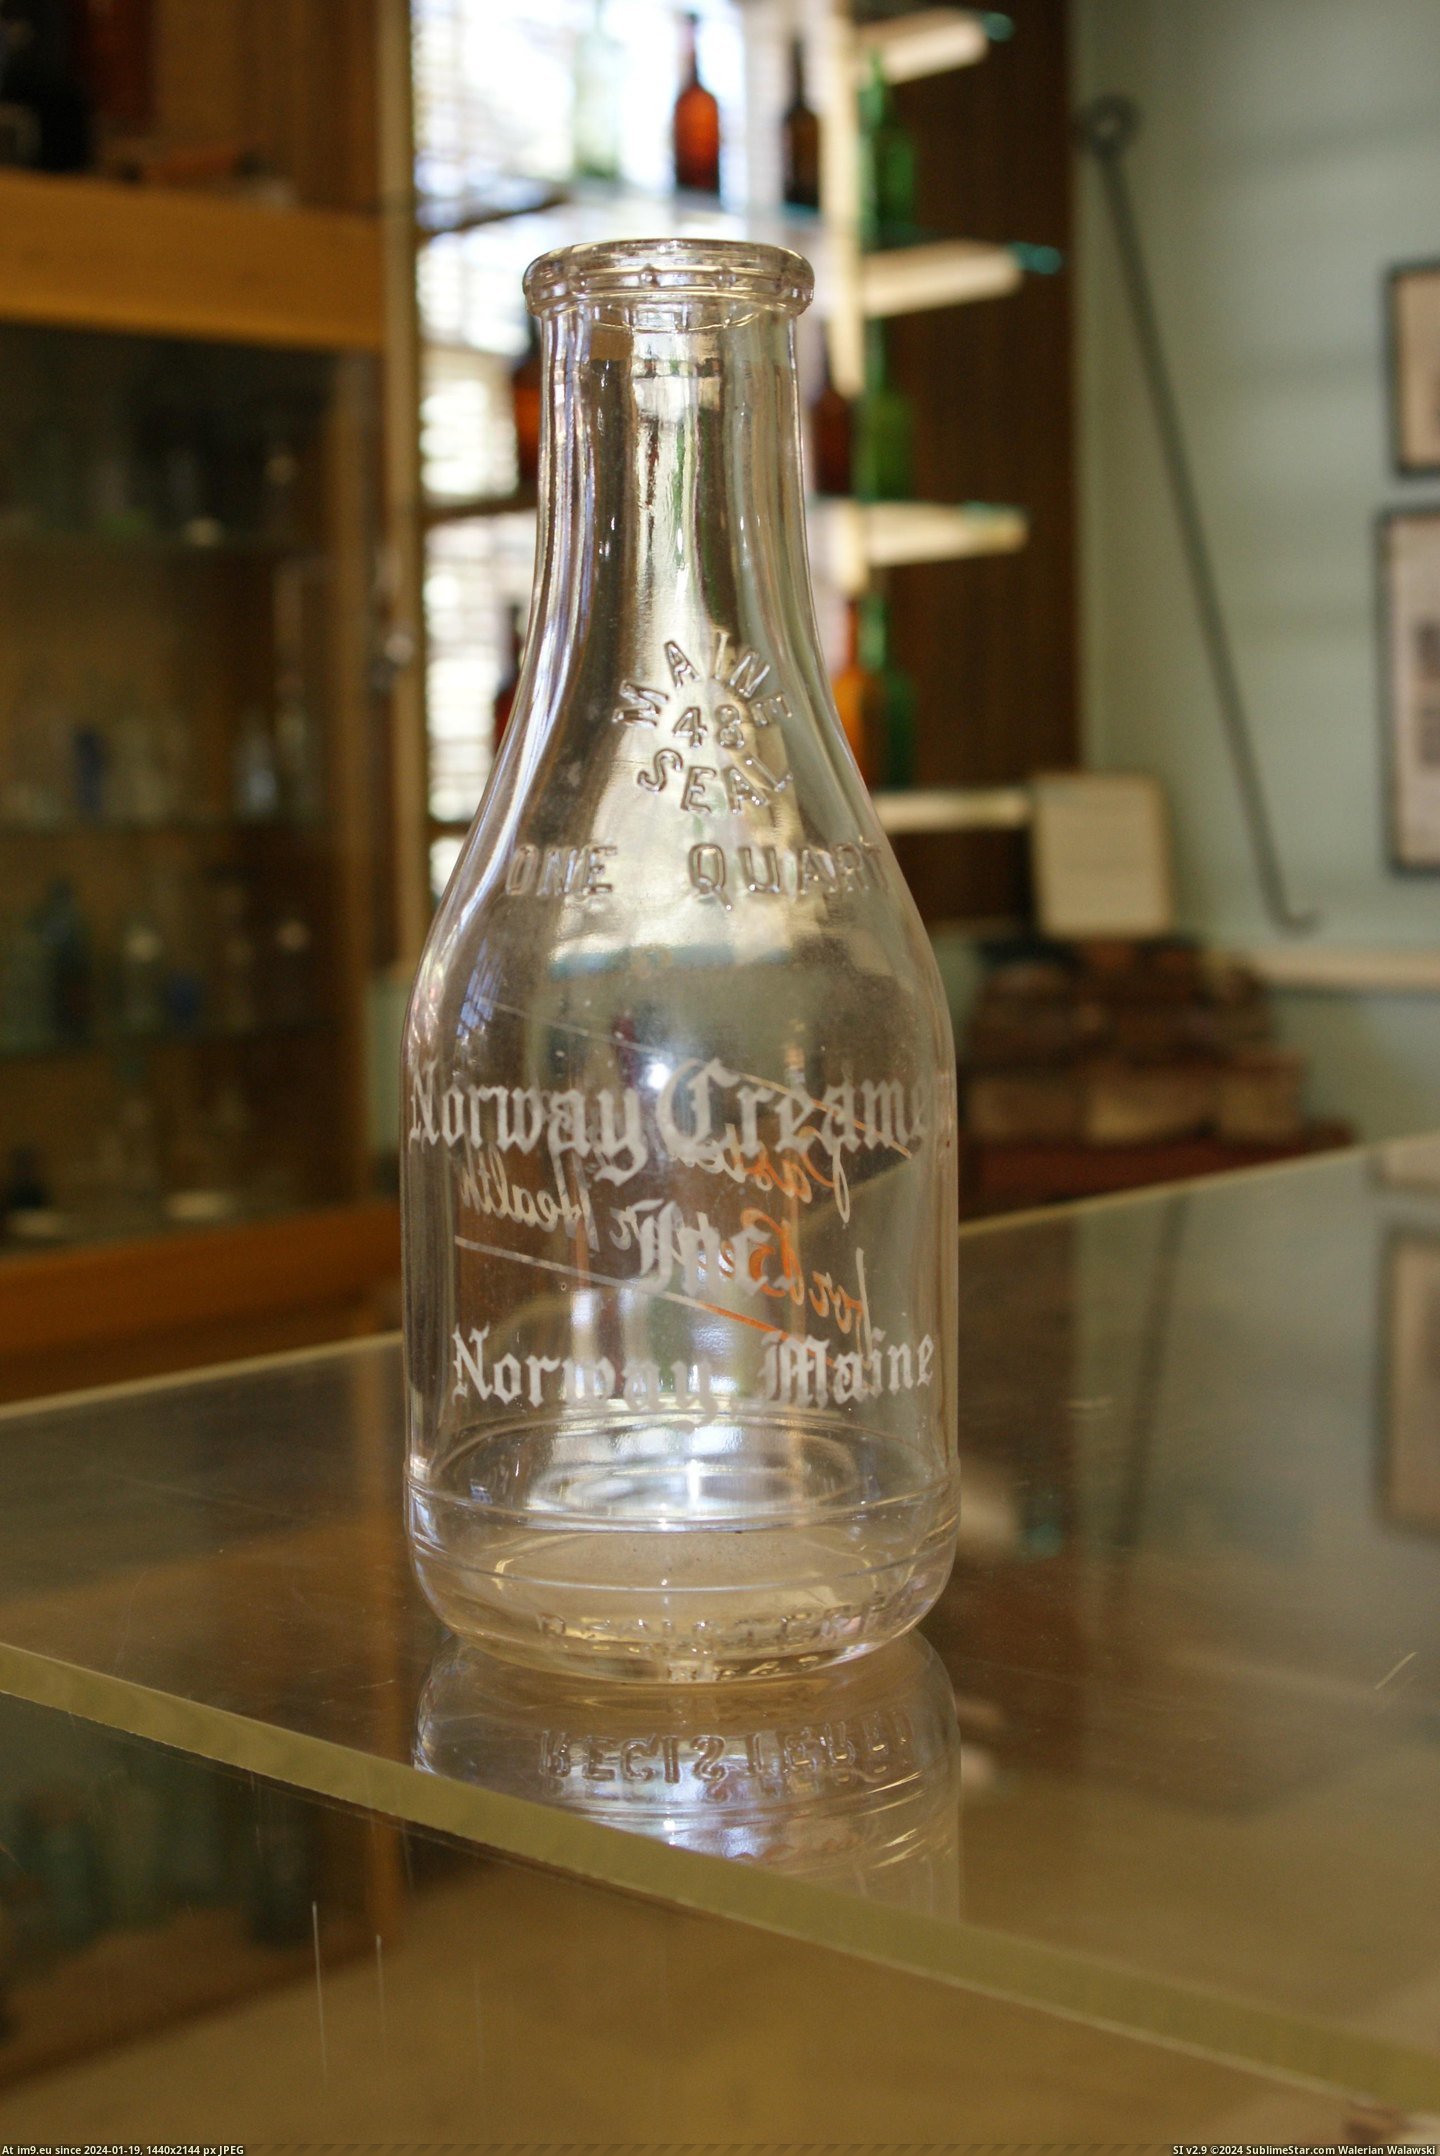 #Museum #Maine #Naples #Bottle MAINE BOTTLE MUSEUM NAPLES (32) Pic. (Bild von album MAINE BOTTLE MUSEUM))